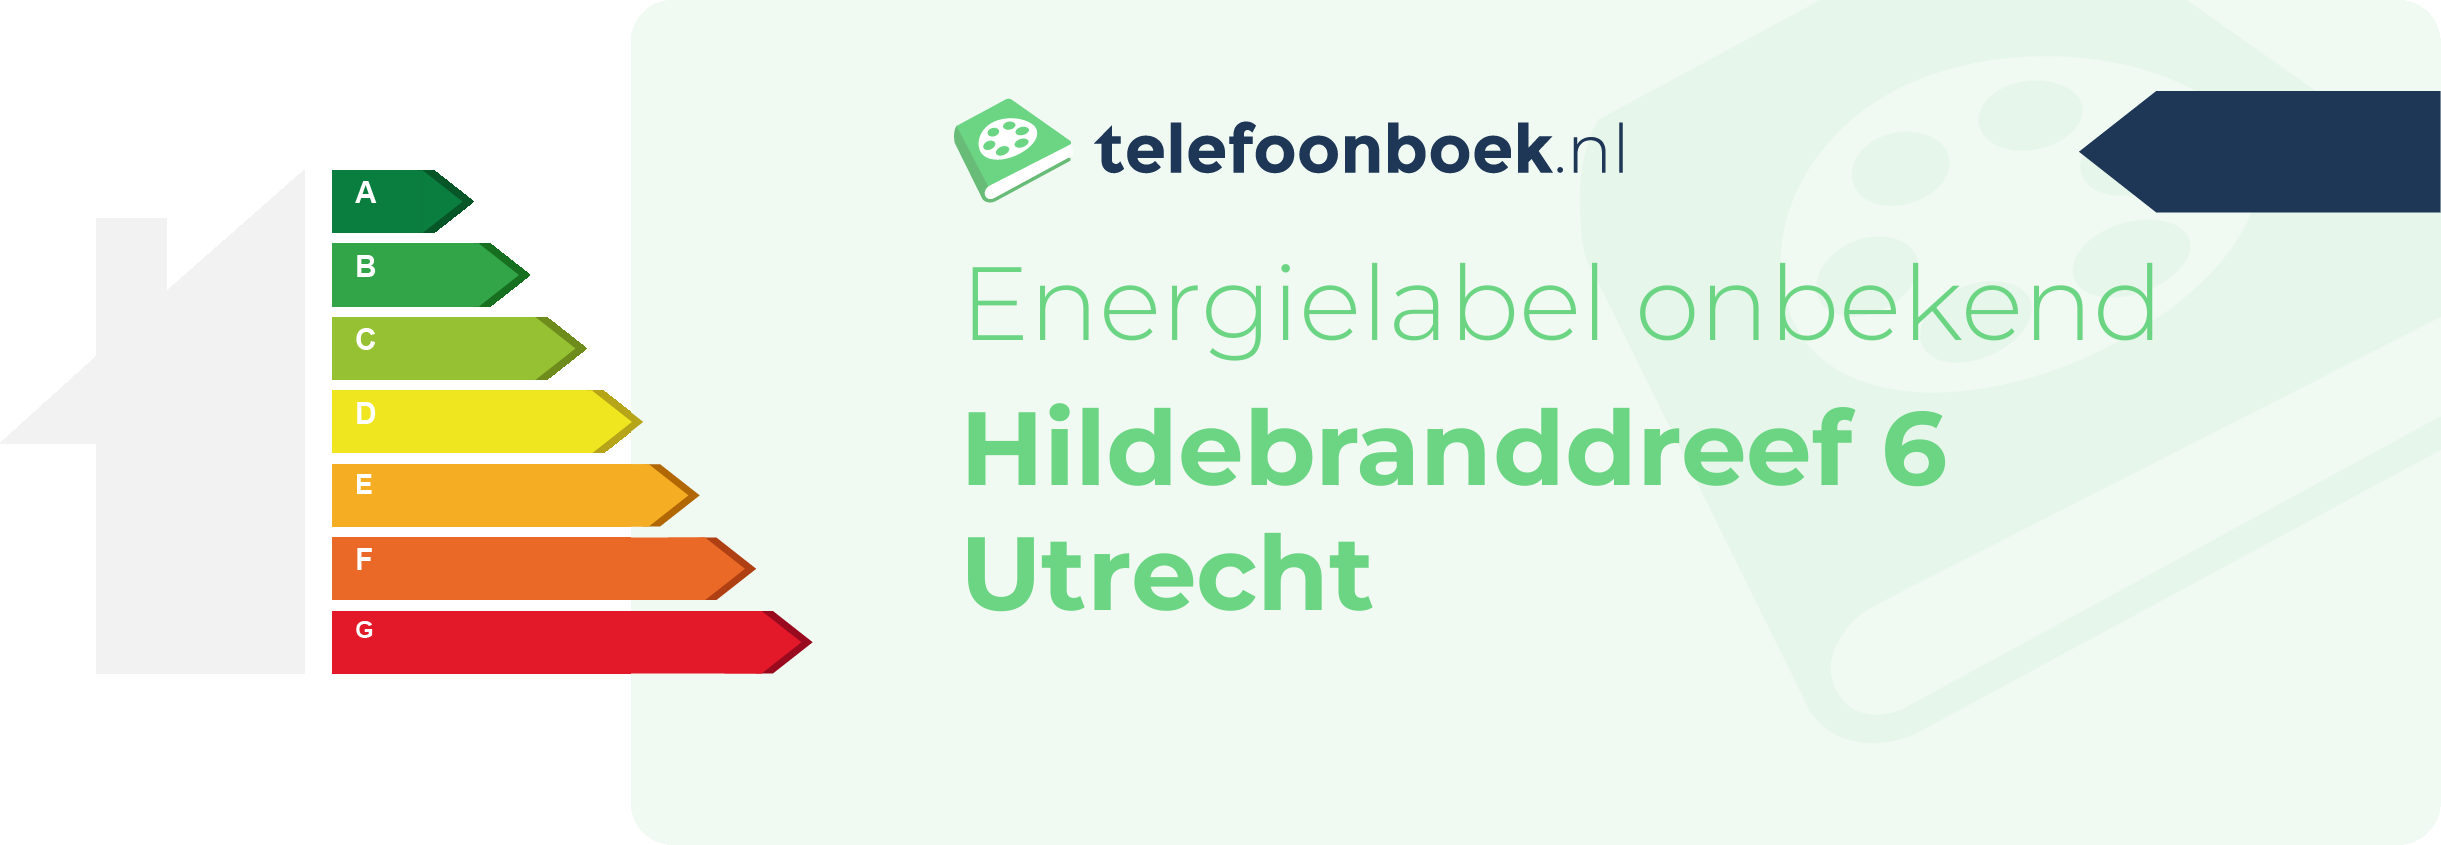 Energielabel Hildebranddreef 6 Utrecht